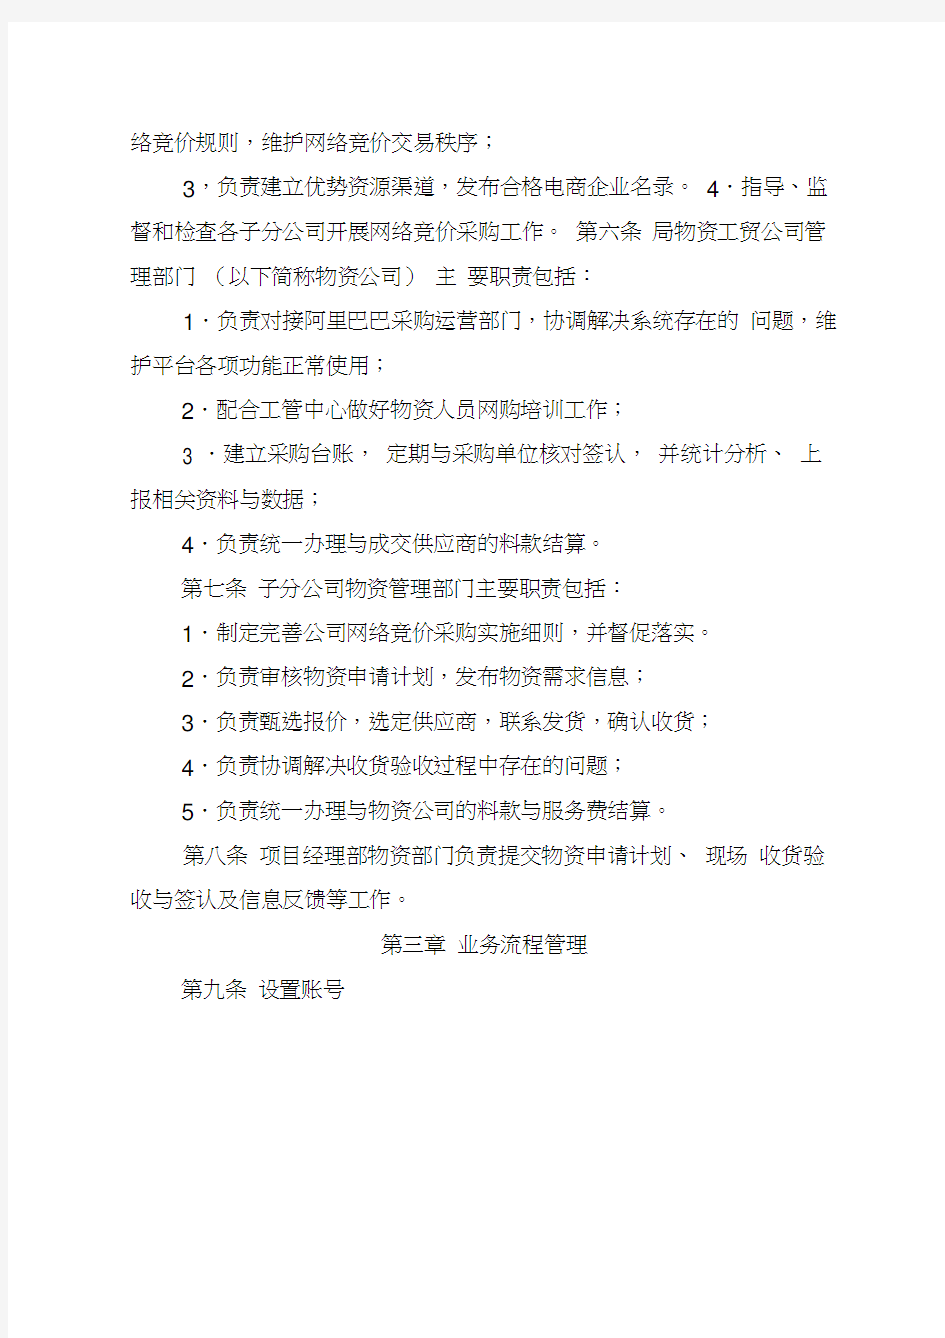 中铁四局集团工程项目常用物资网络竞价采购管理办法(20200809100316)